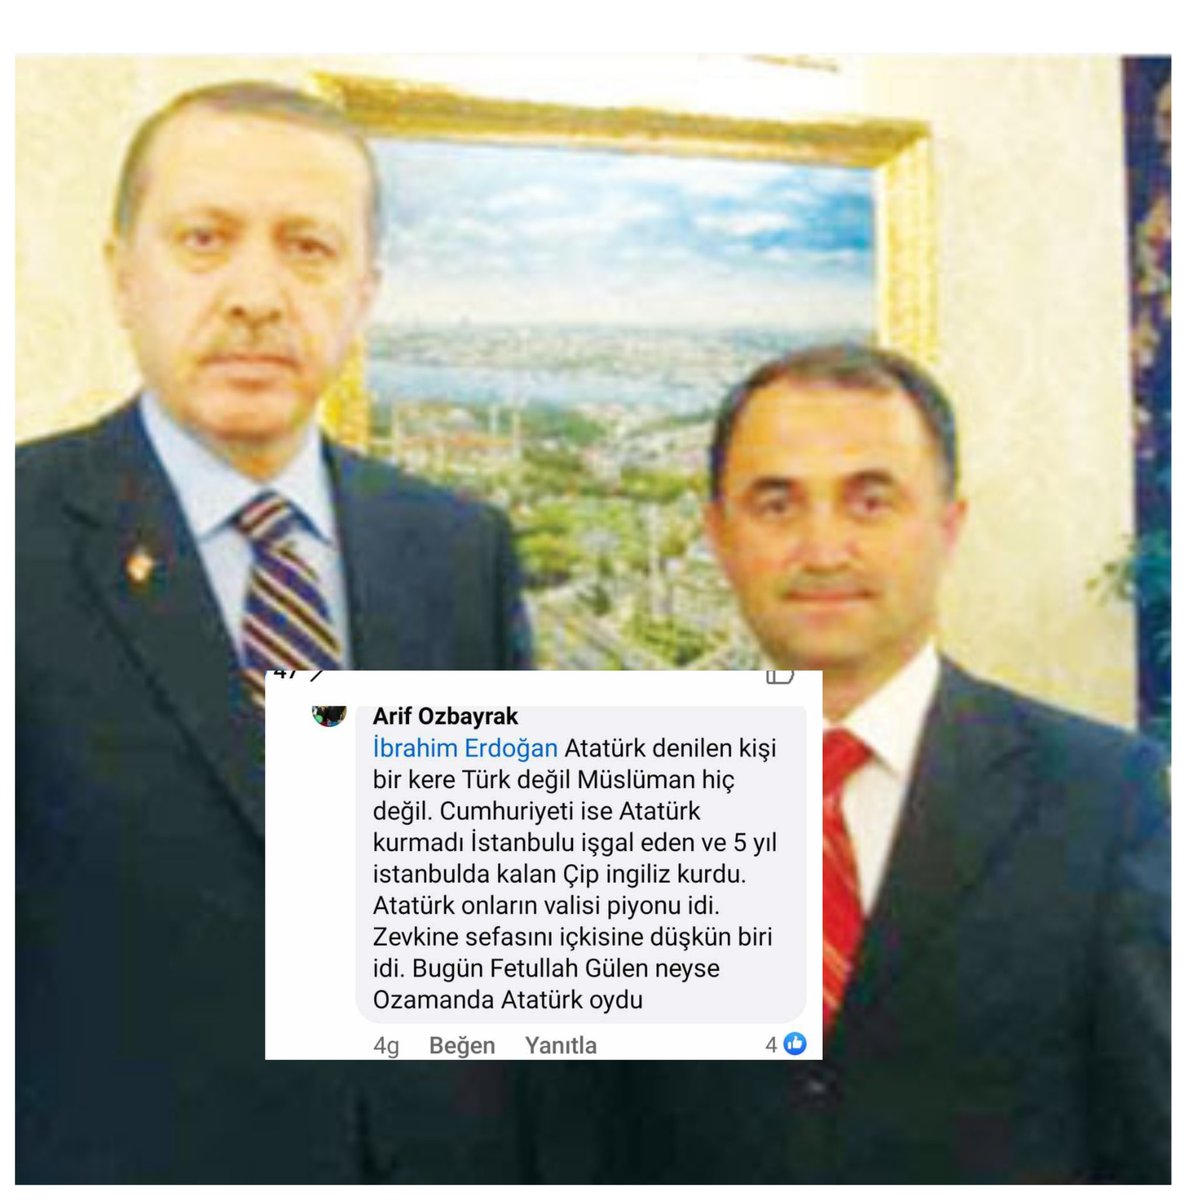 KKTC Dipkarpaz belediyesi eski Başkanı Arif Özbayrak:' Atatürk Türk ve Müslüman değildi, Cumhuriyeti Atatürk kurmadı, Atatürk İngilizlerin piyonuydu, içkisine düşkün biriydi' diyor.. @add_genelmerkez @ceyhunirgil @nasuhbektas @SibelSuicmez